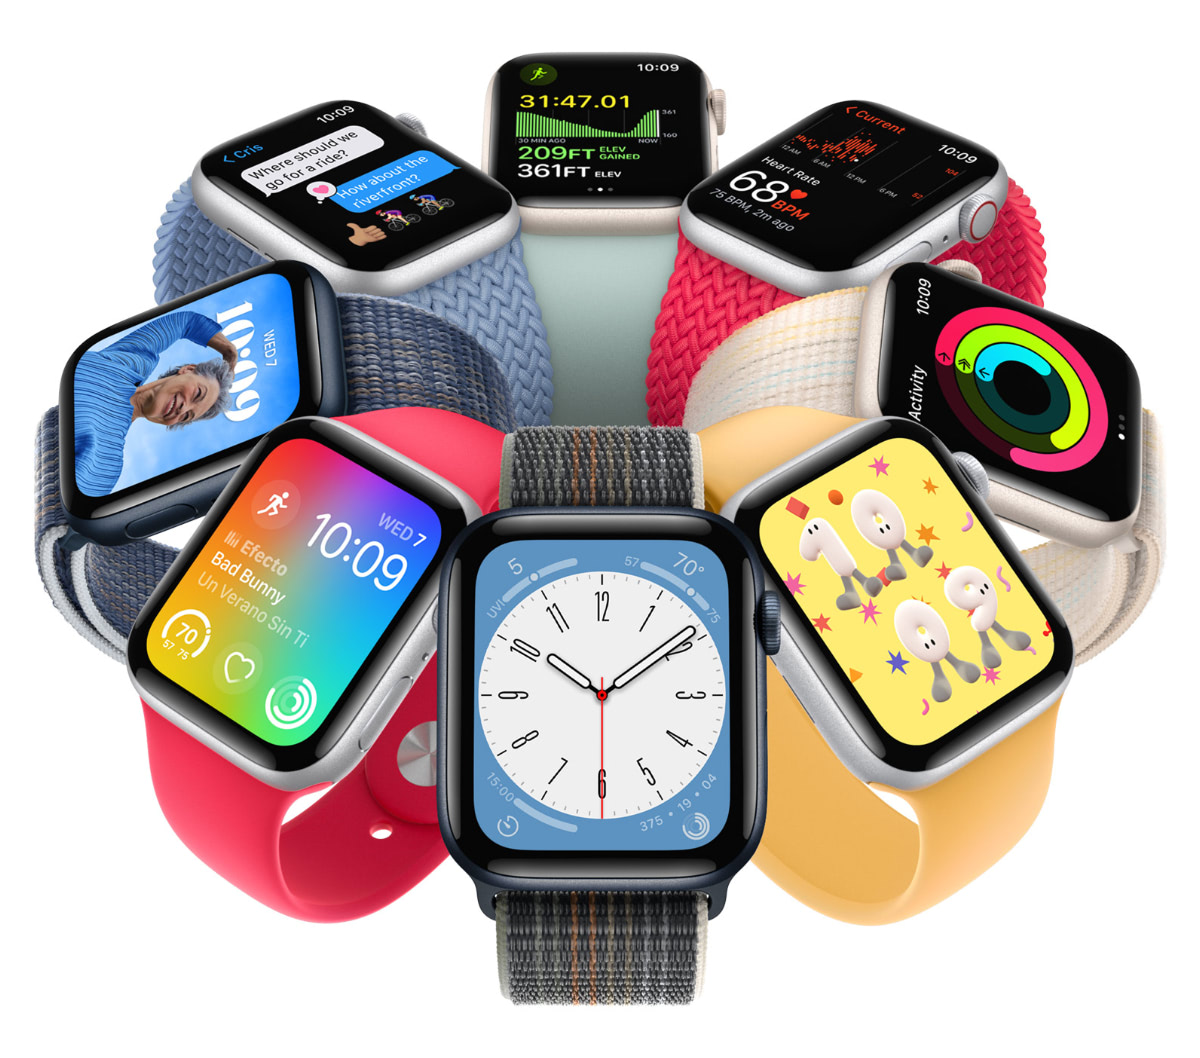 Apple Watch SE 2